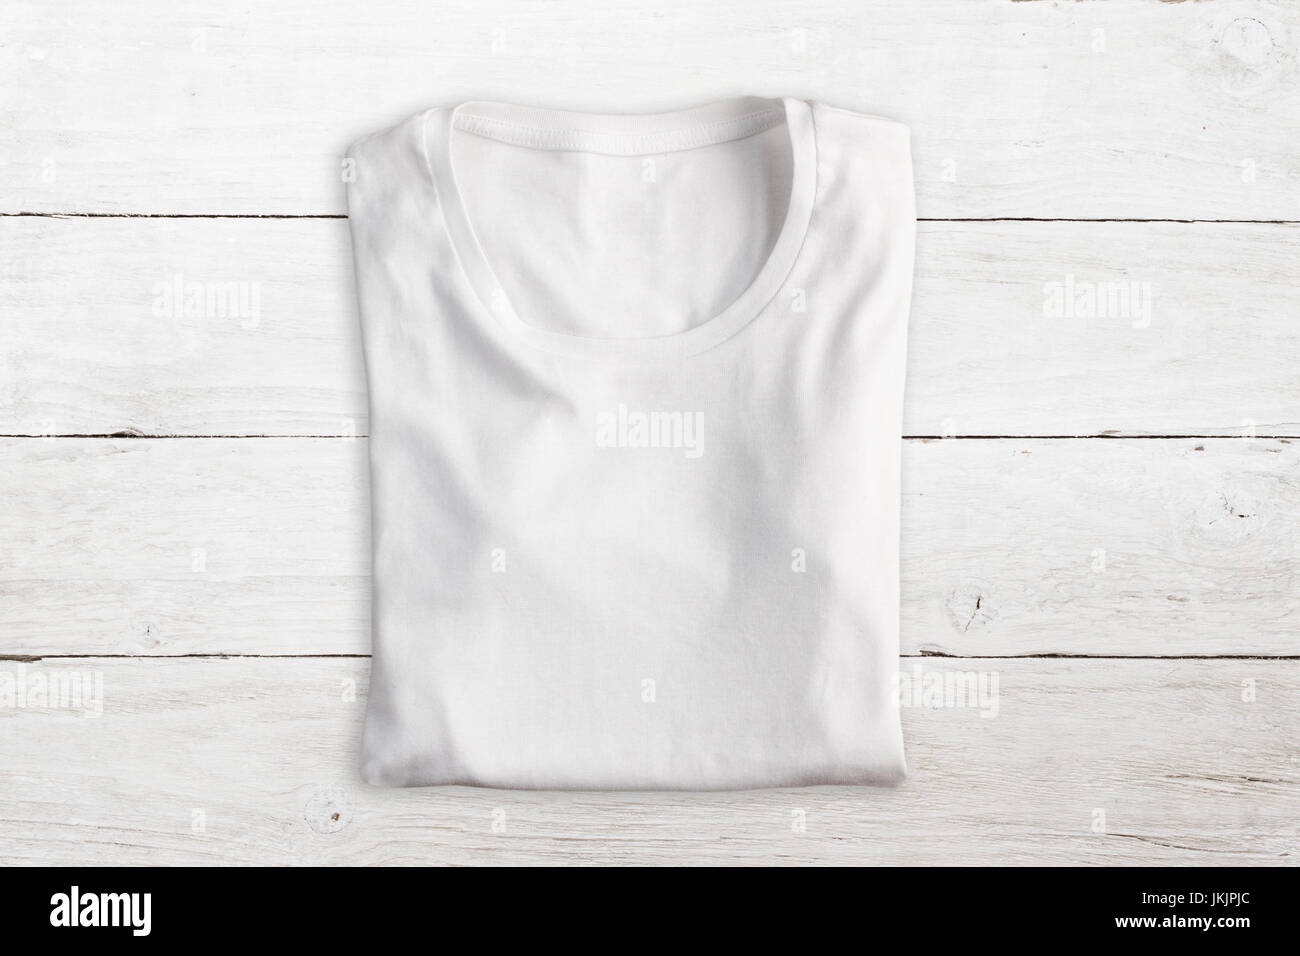 Weißes T-shirt auf hölzerne Struktur gefaltet Stockfotografie - Alamy